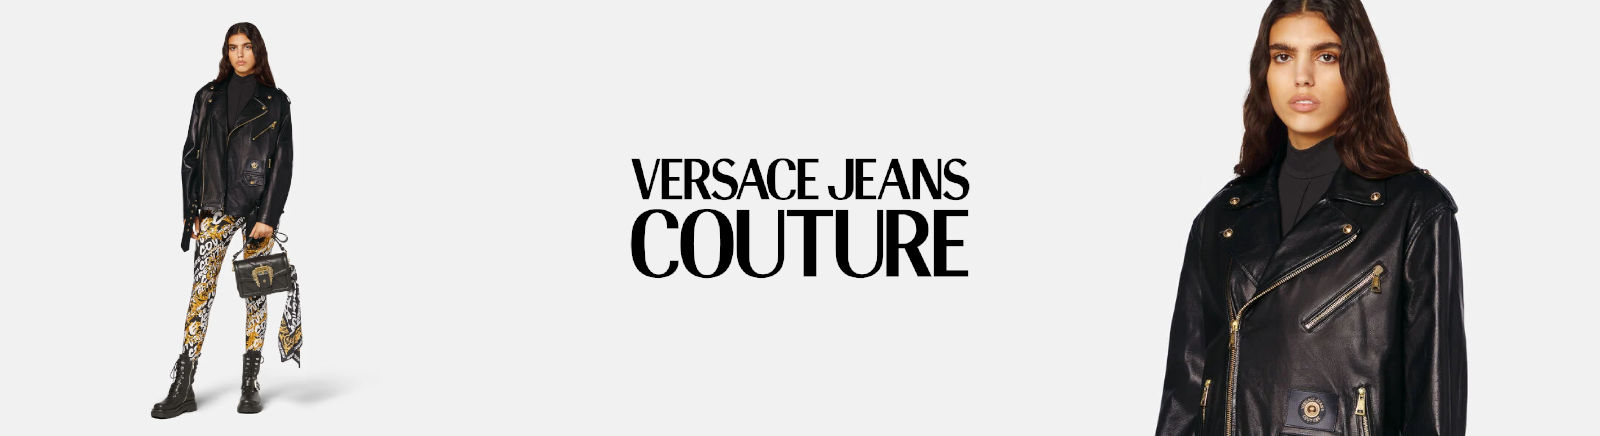 Juppen: Versace Jeans Herrenschuhe online kaufen online shoppen